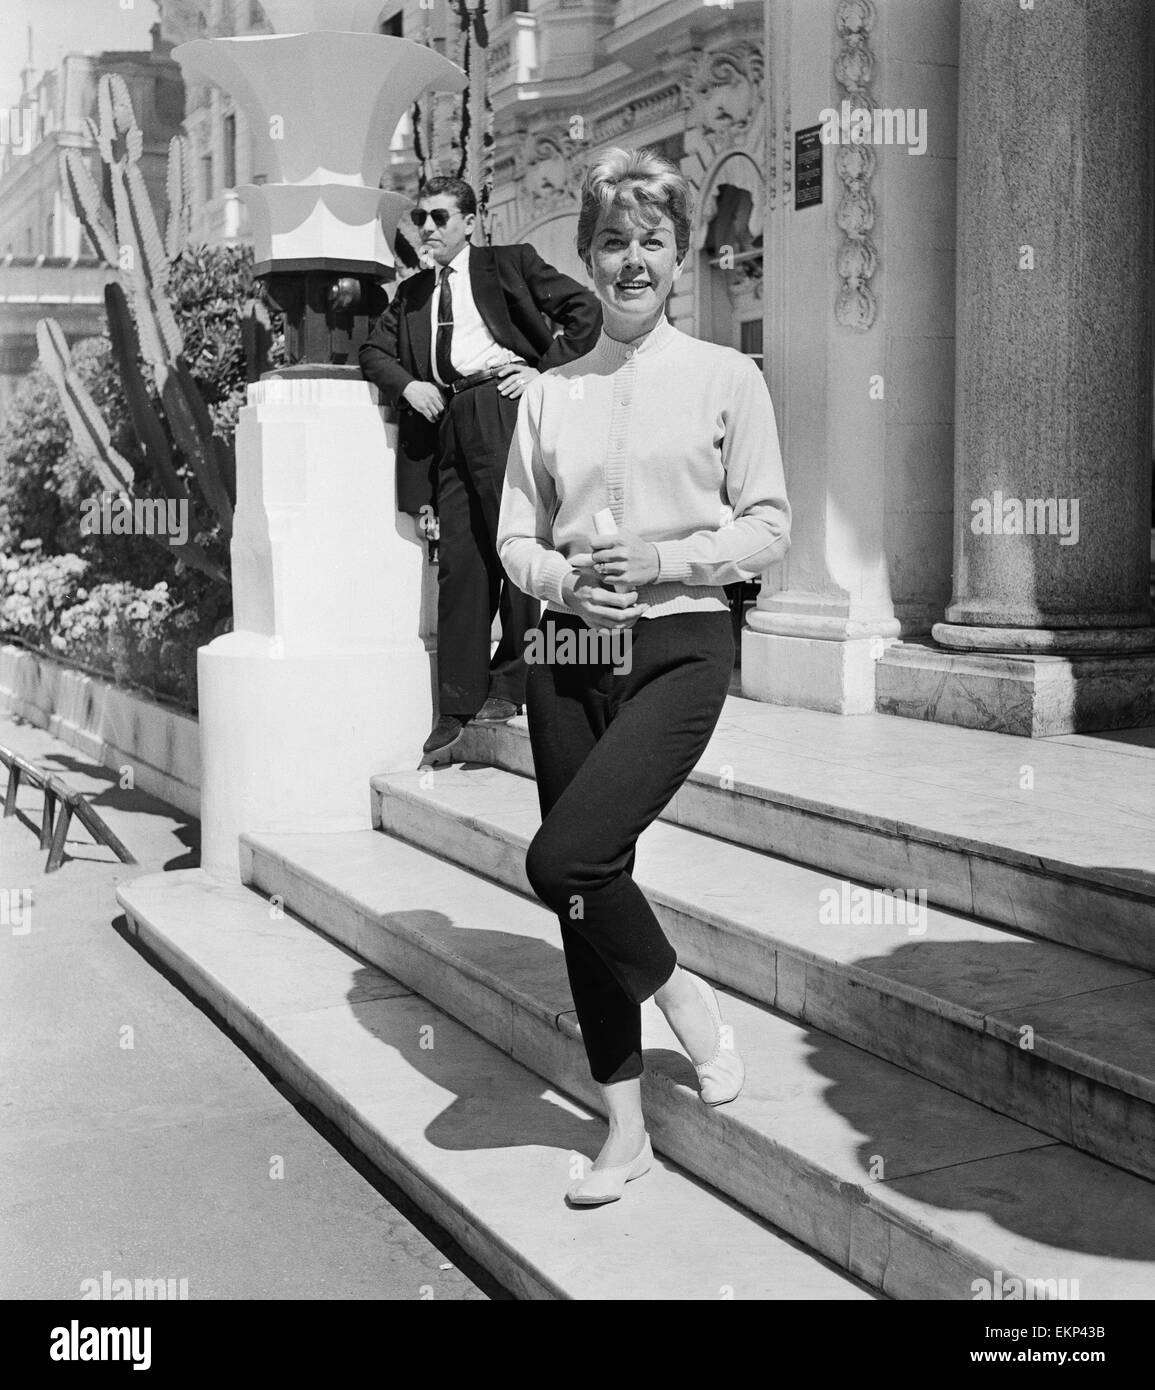 American film Star e cantante Doris Day fotografata al Cannes Film Festival. Il 9 maggio 1955. Foto Stock